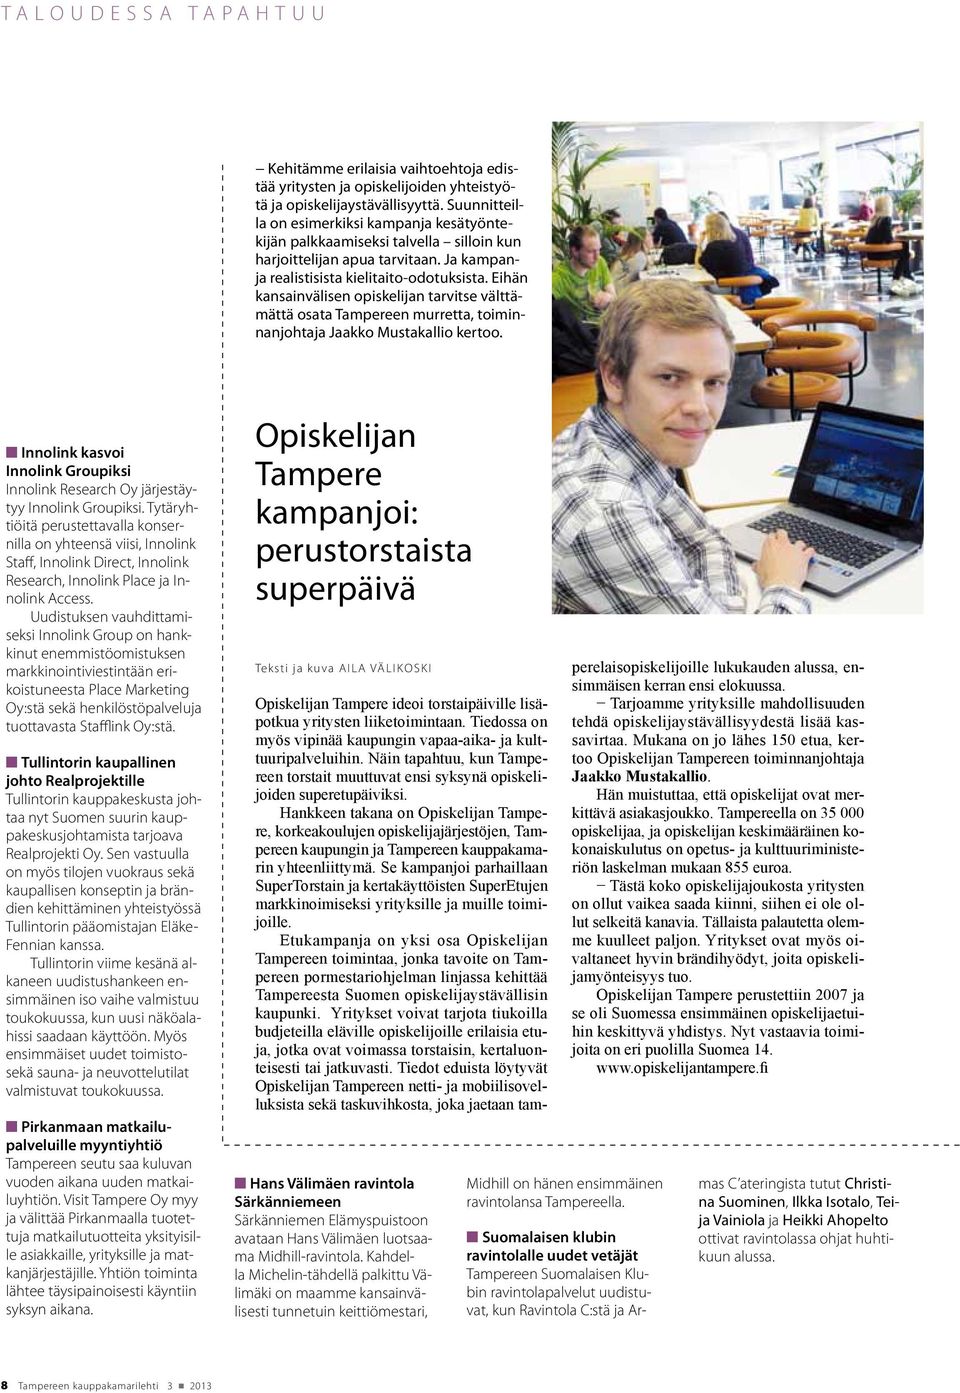 Eihän kansainvälisen opiskelijan tarvitse välttämättä osata Tampereen murretta, toiminnanjohtaja Jaakko Mustakallio kertoo.